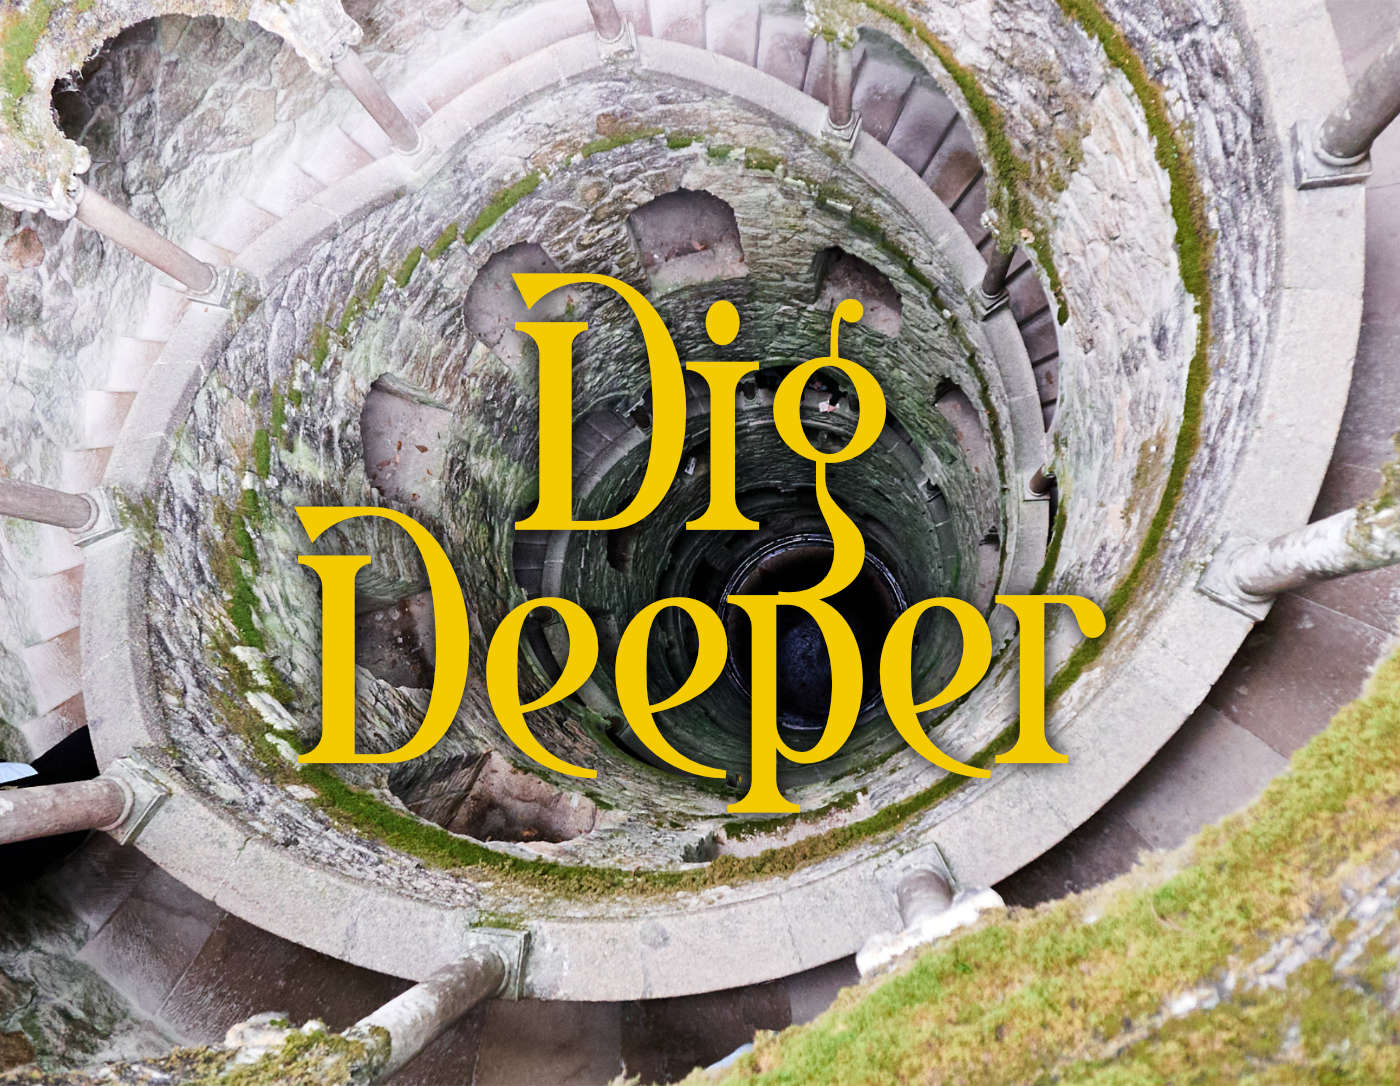 Dig Deeper - Theta Healing Online Course